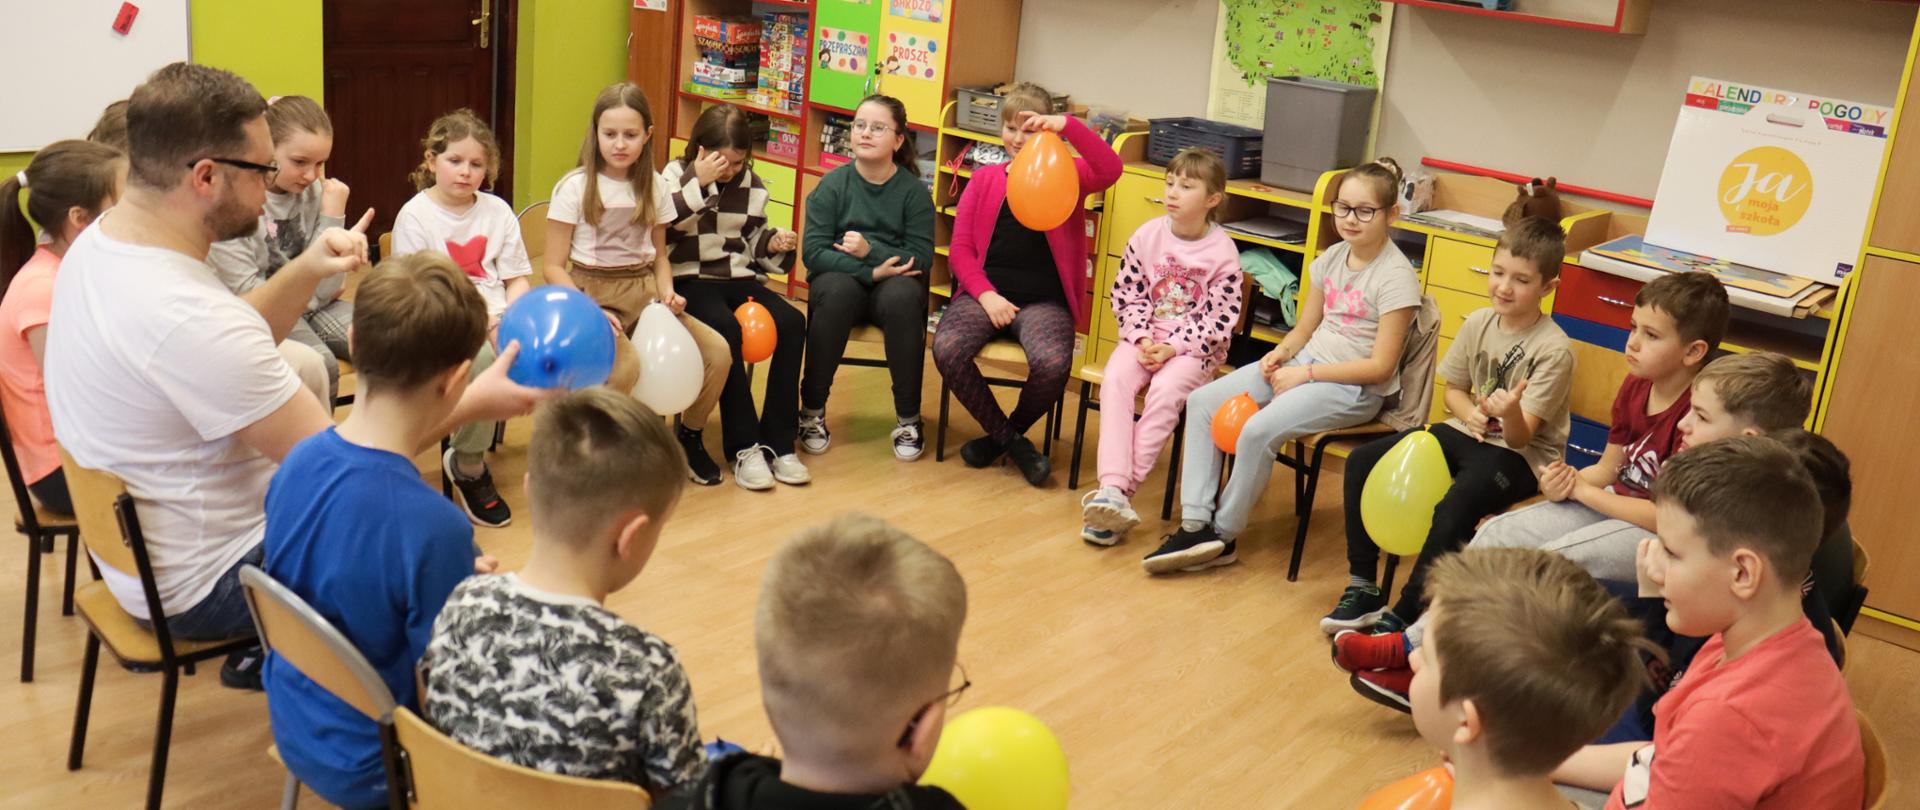 Uczniowie siedzą na krzesłach w kręgu w klasie, niektórzy trzymają w dłoniach balon